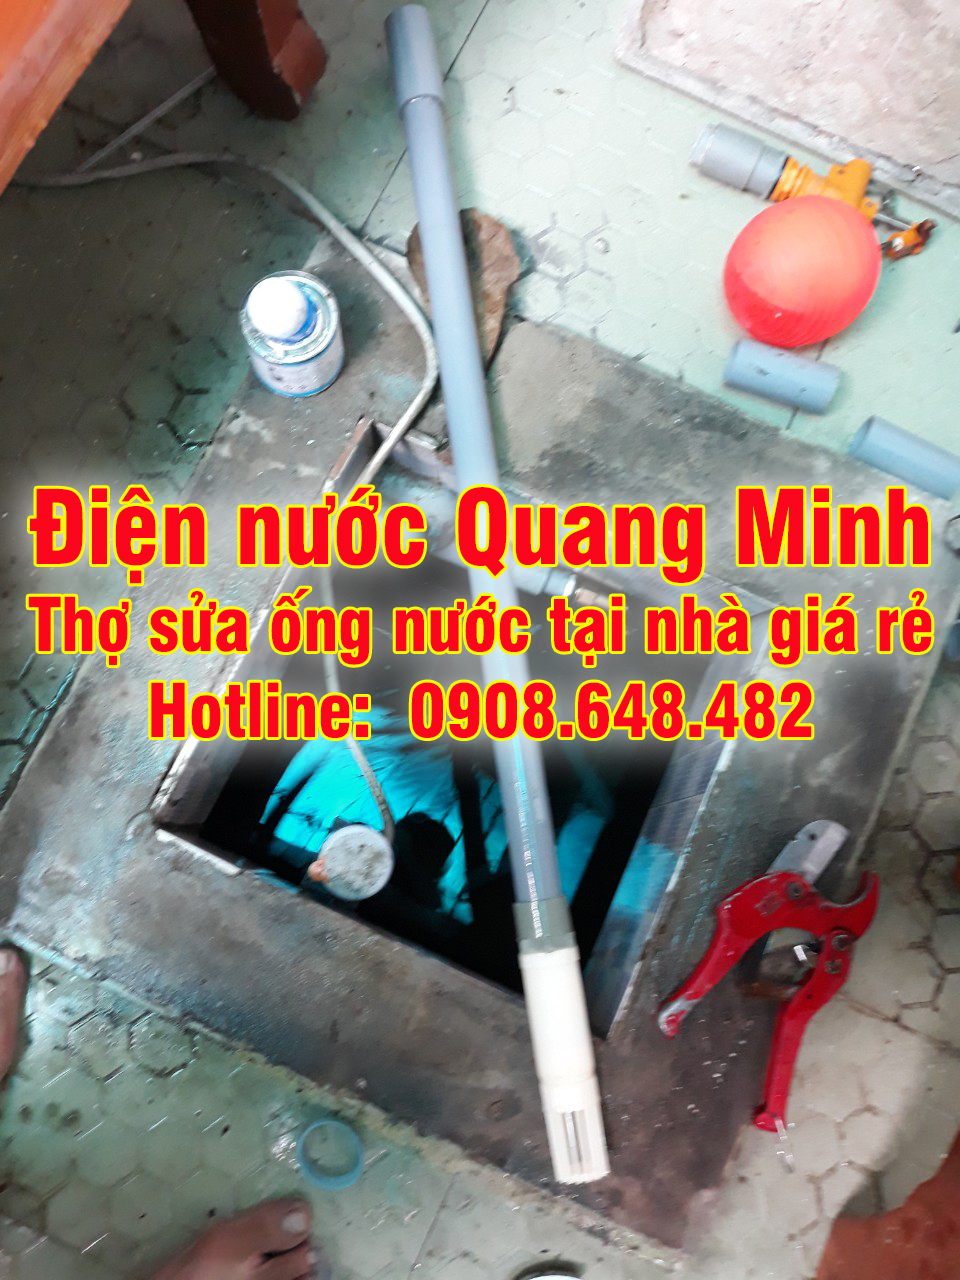 Thợ sửa ống nước tại nhà giá rẻ